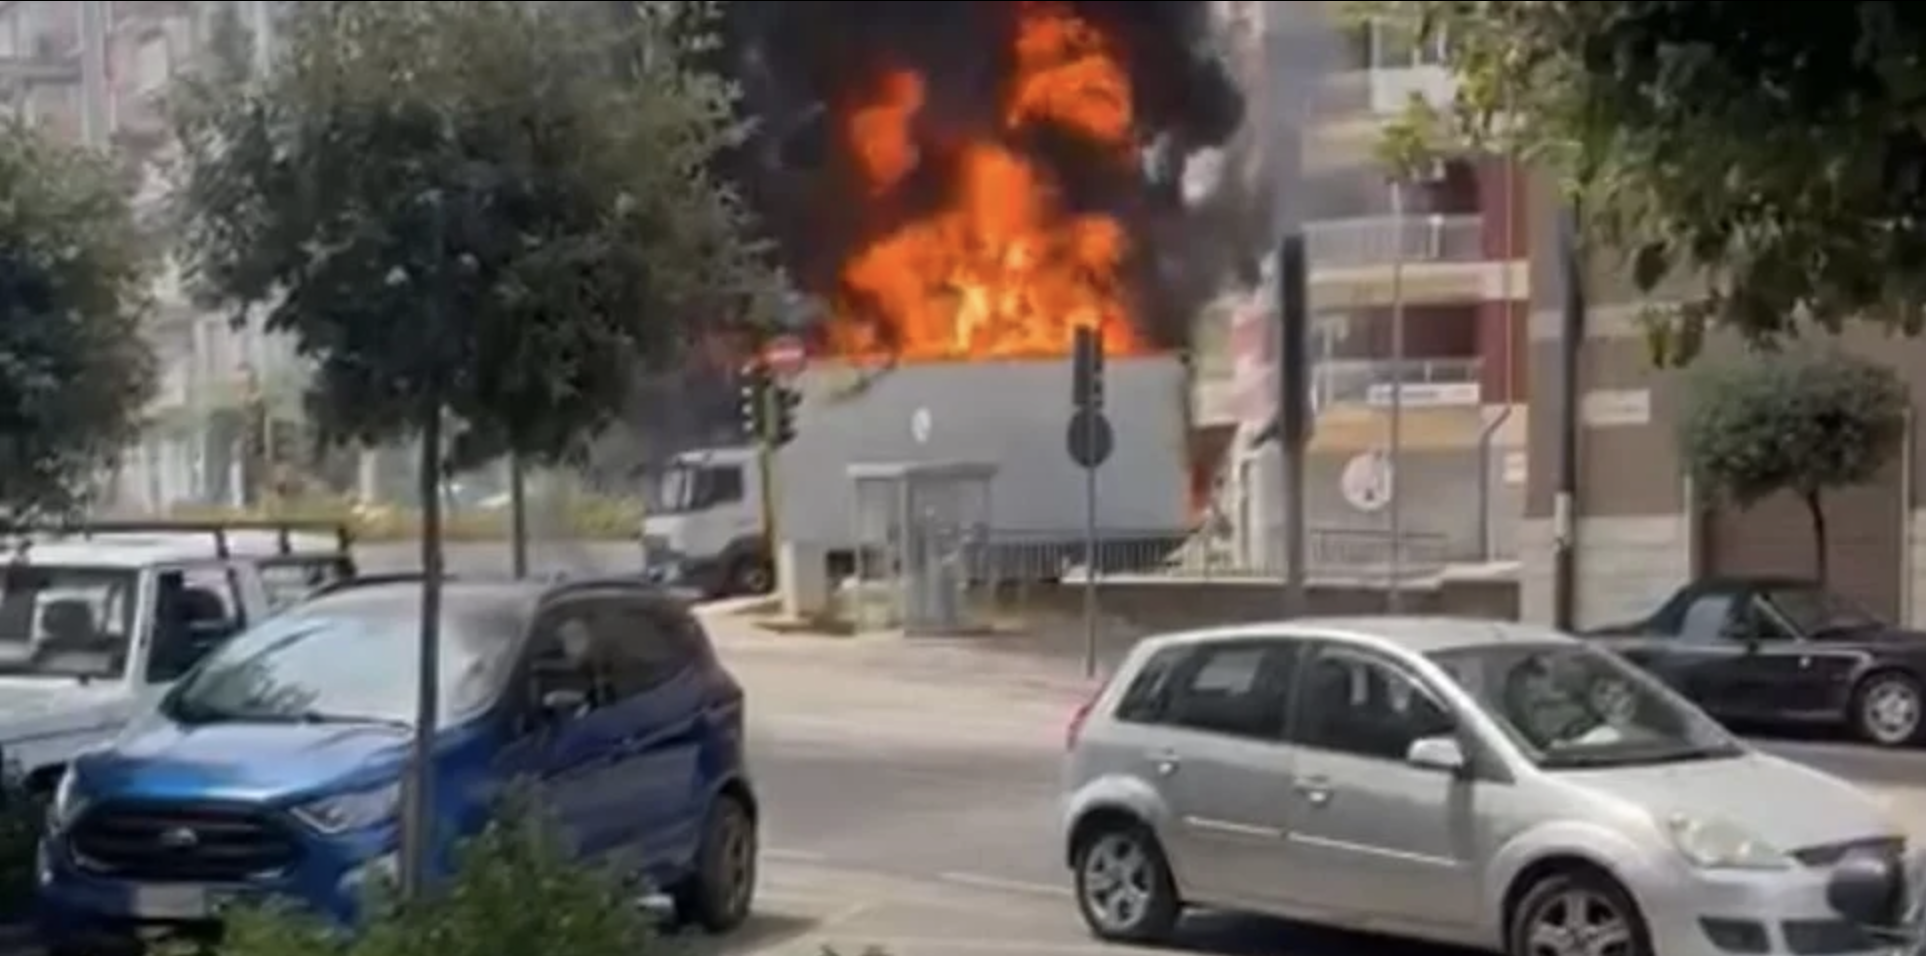 Camion pieno di detersivi in fiamme nel centro di Rossano: paura per residenti e passanti